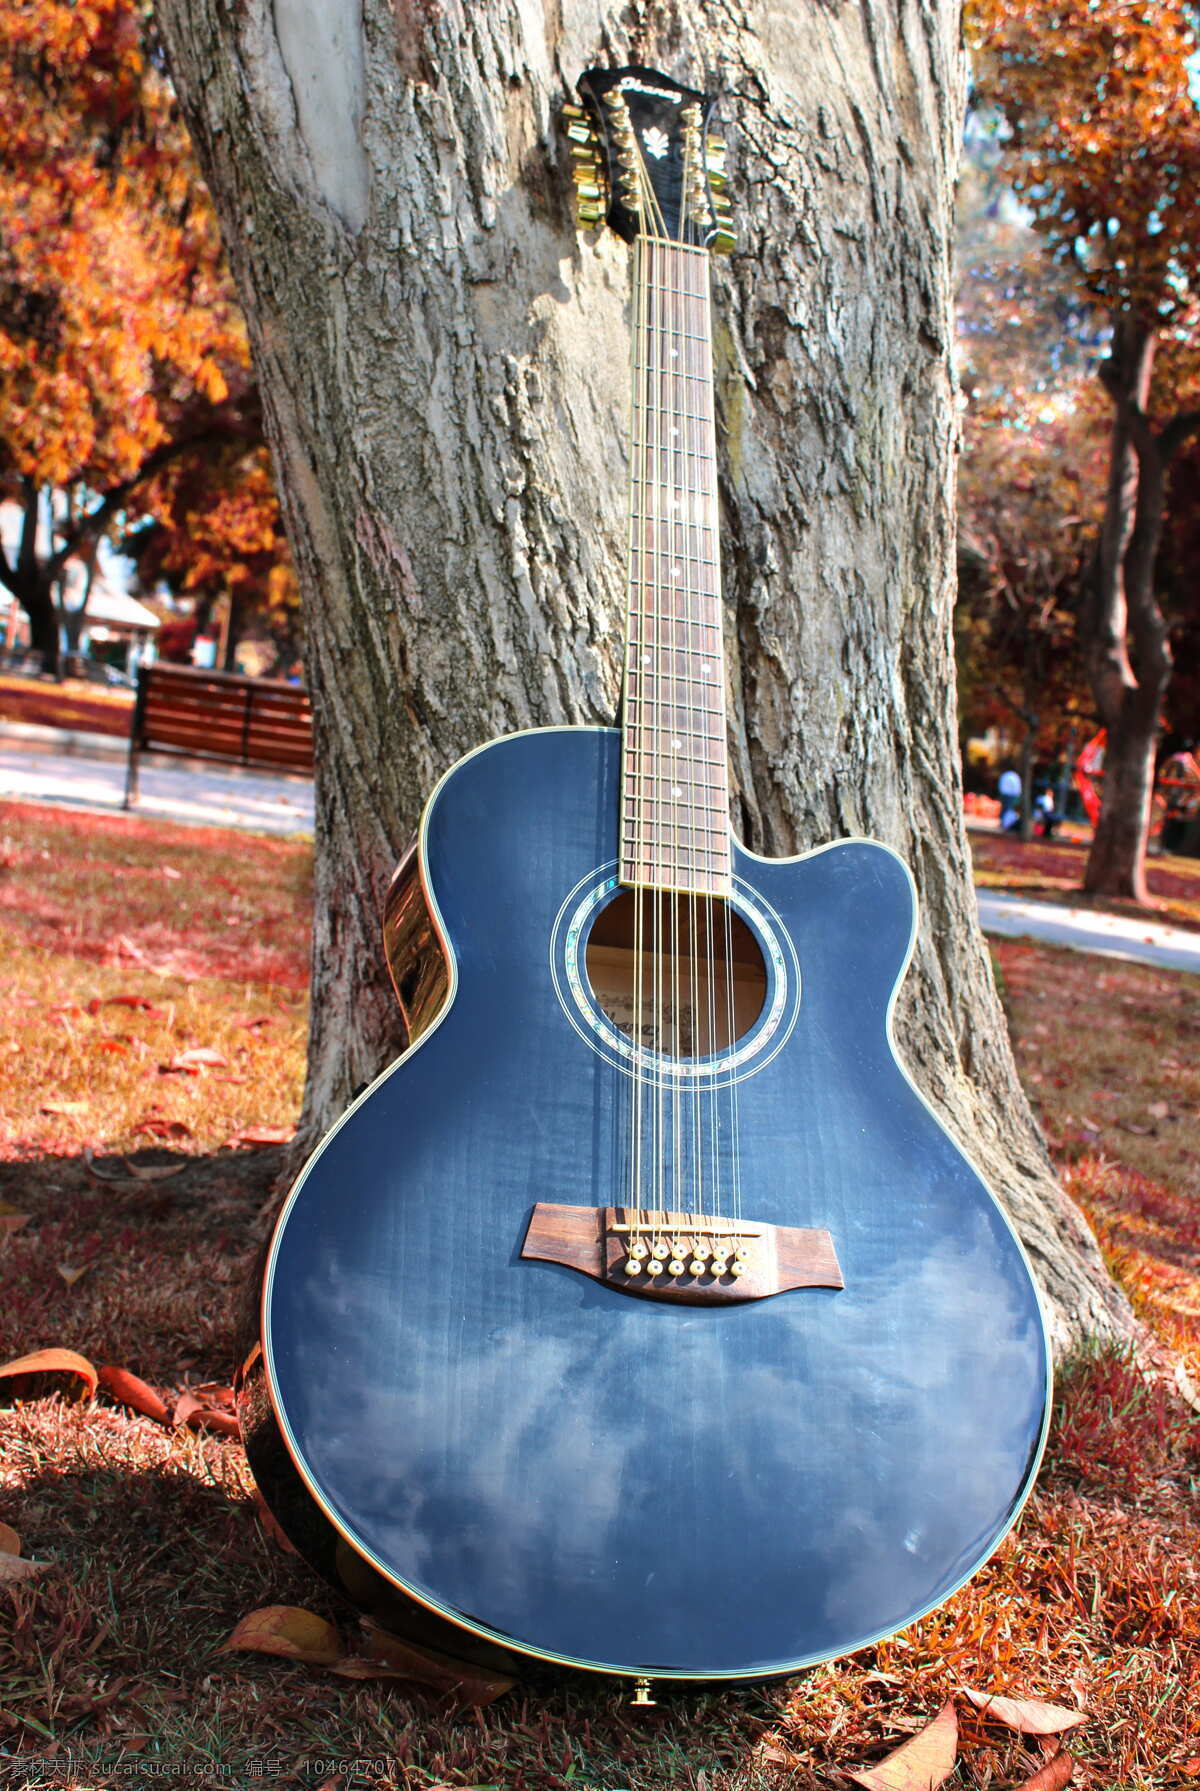 吉他 公园图片 秋季 公园 弦乐器 树 木 音乐 乐器 音乐家 原声吉他 音乐设备